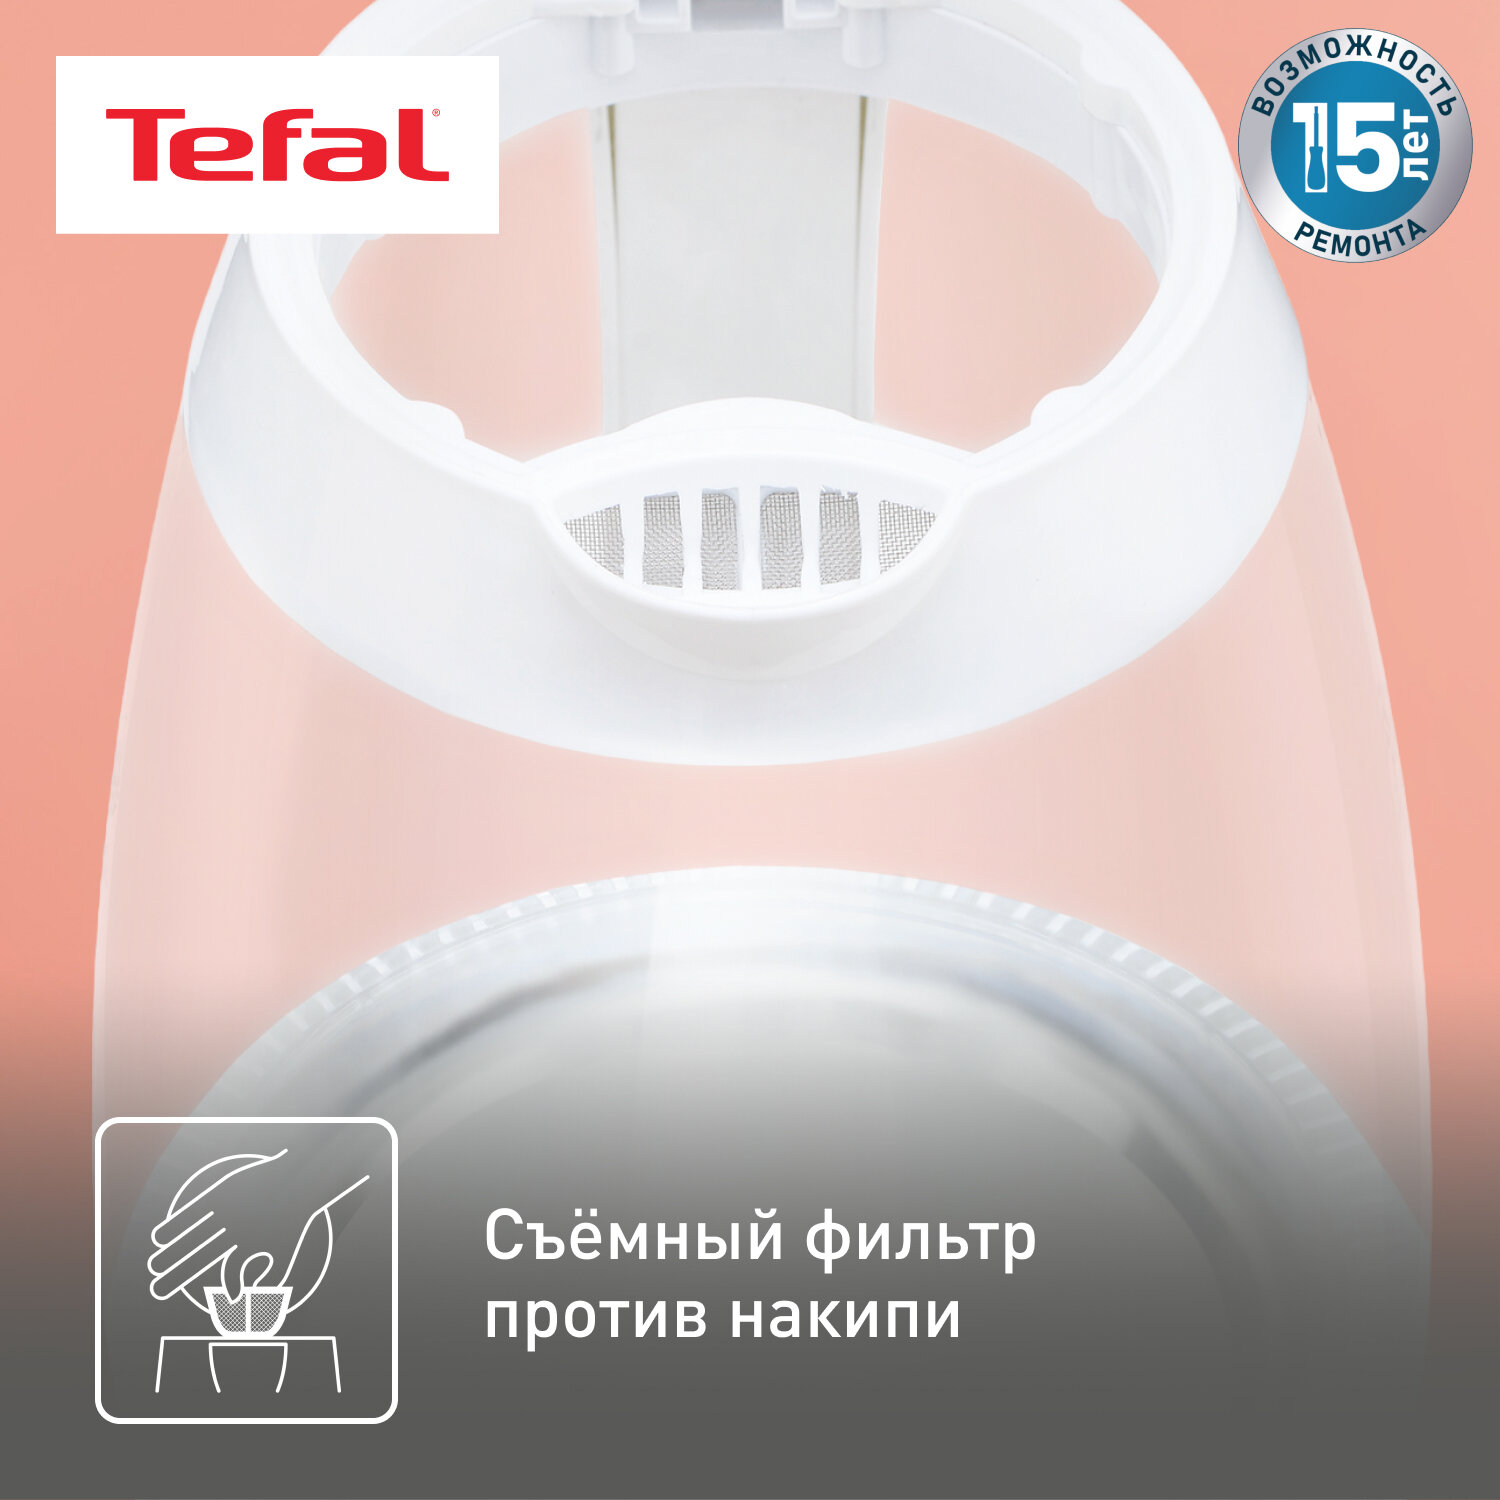 Электрический чайник Tefal - фото №4